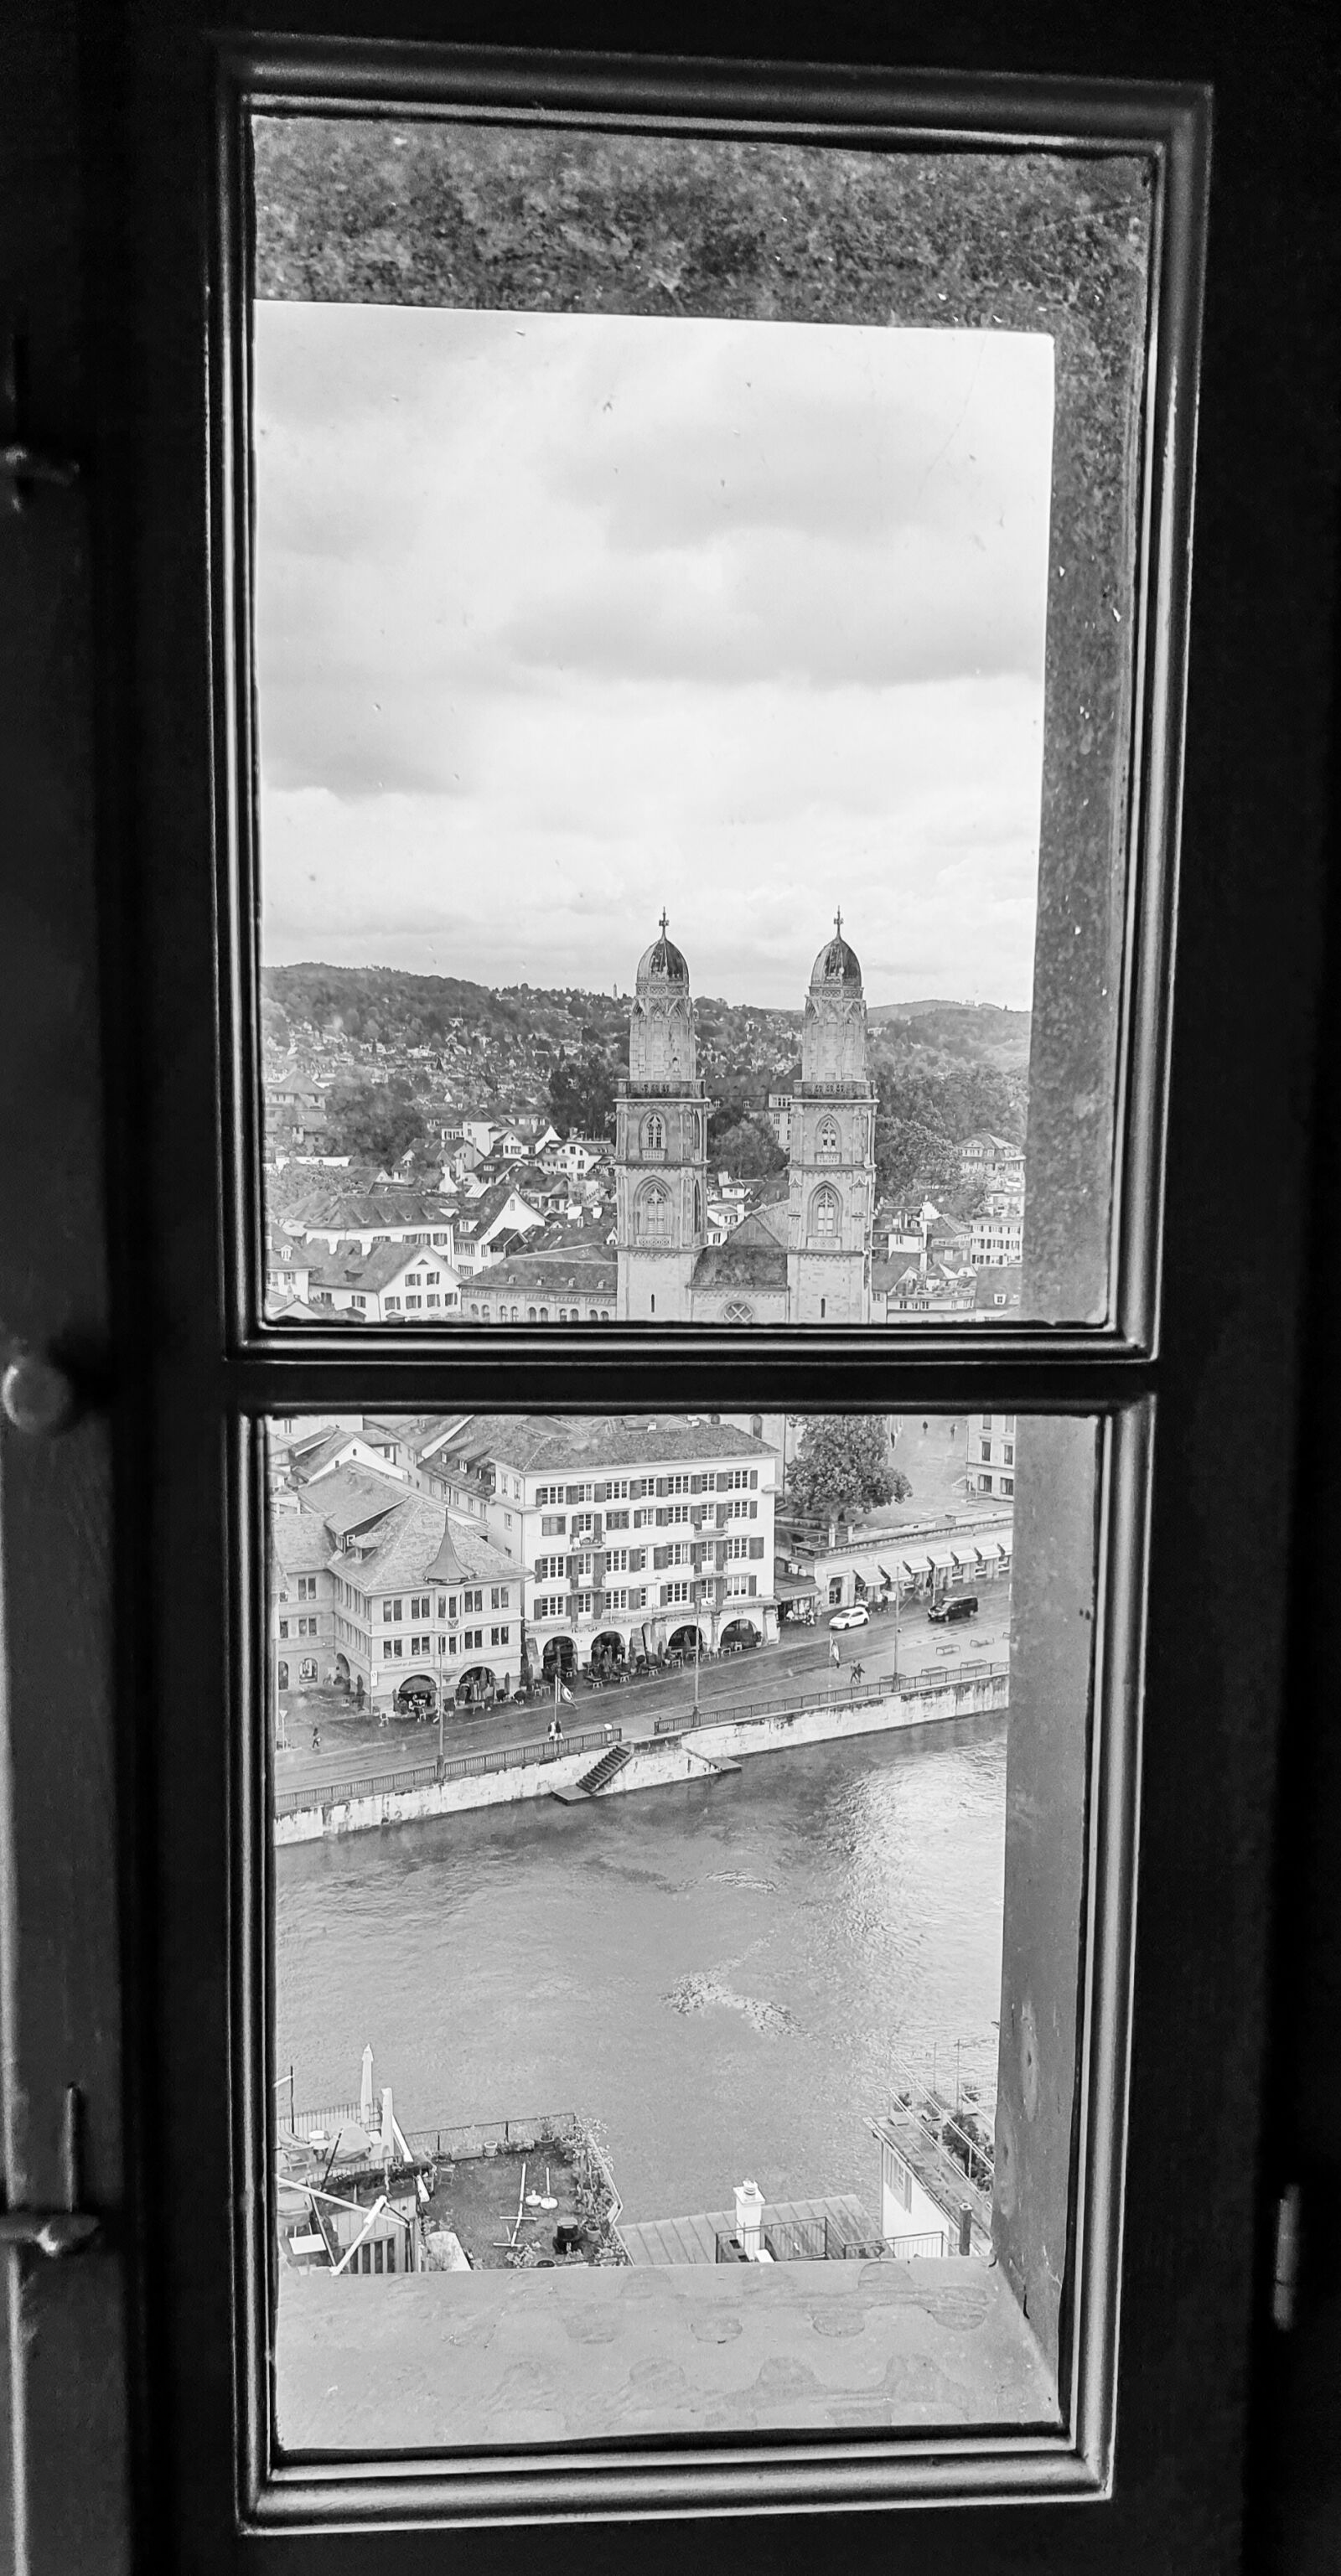 Samsung SM-G960F sample photo. Zurich, architecture, window photography